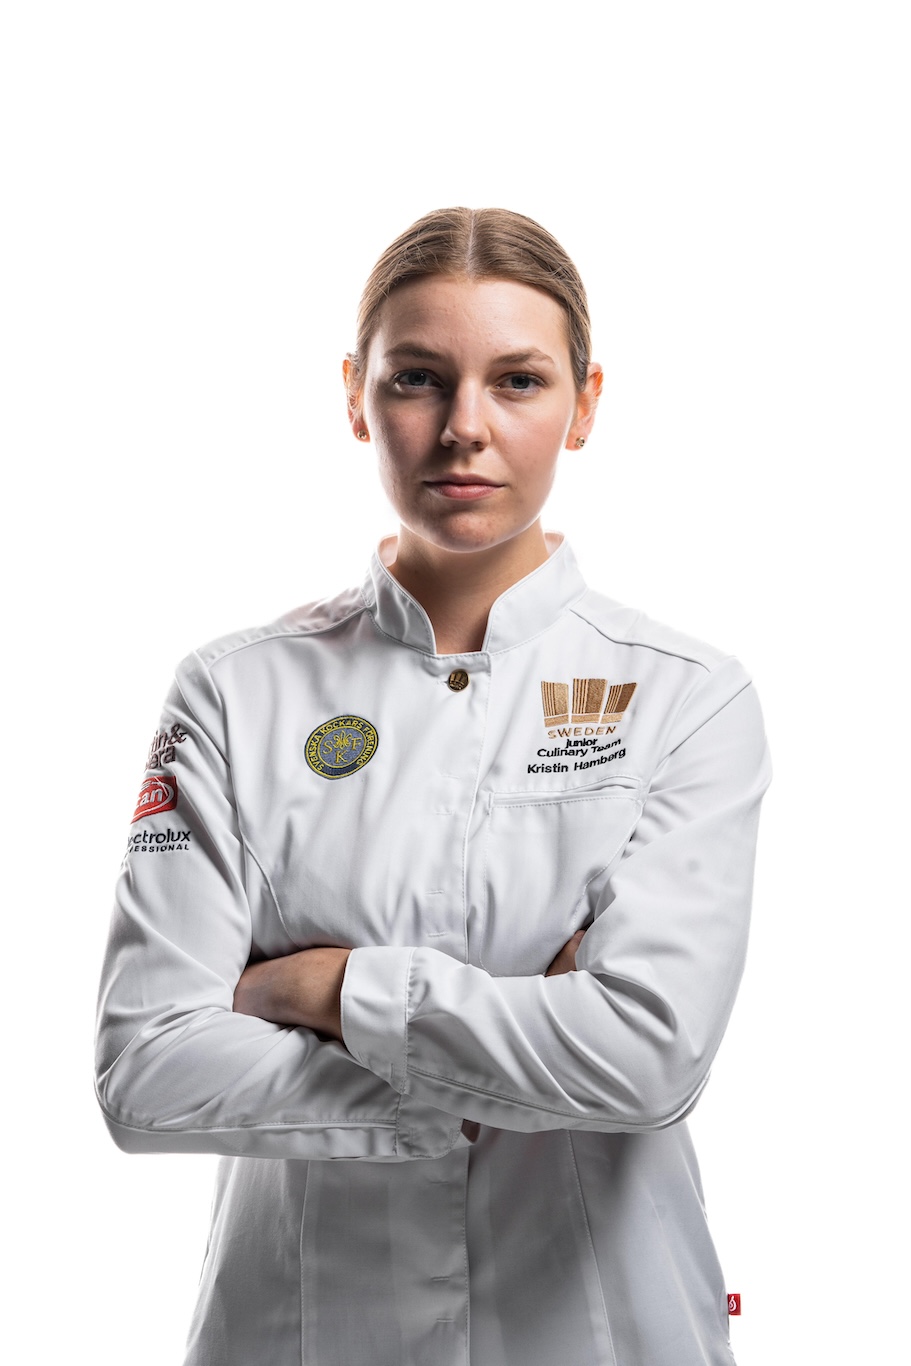 Kristin Hambergs reise fra amatørbaker til kulinarisk OL-gullvinner 13